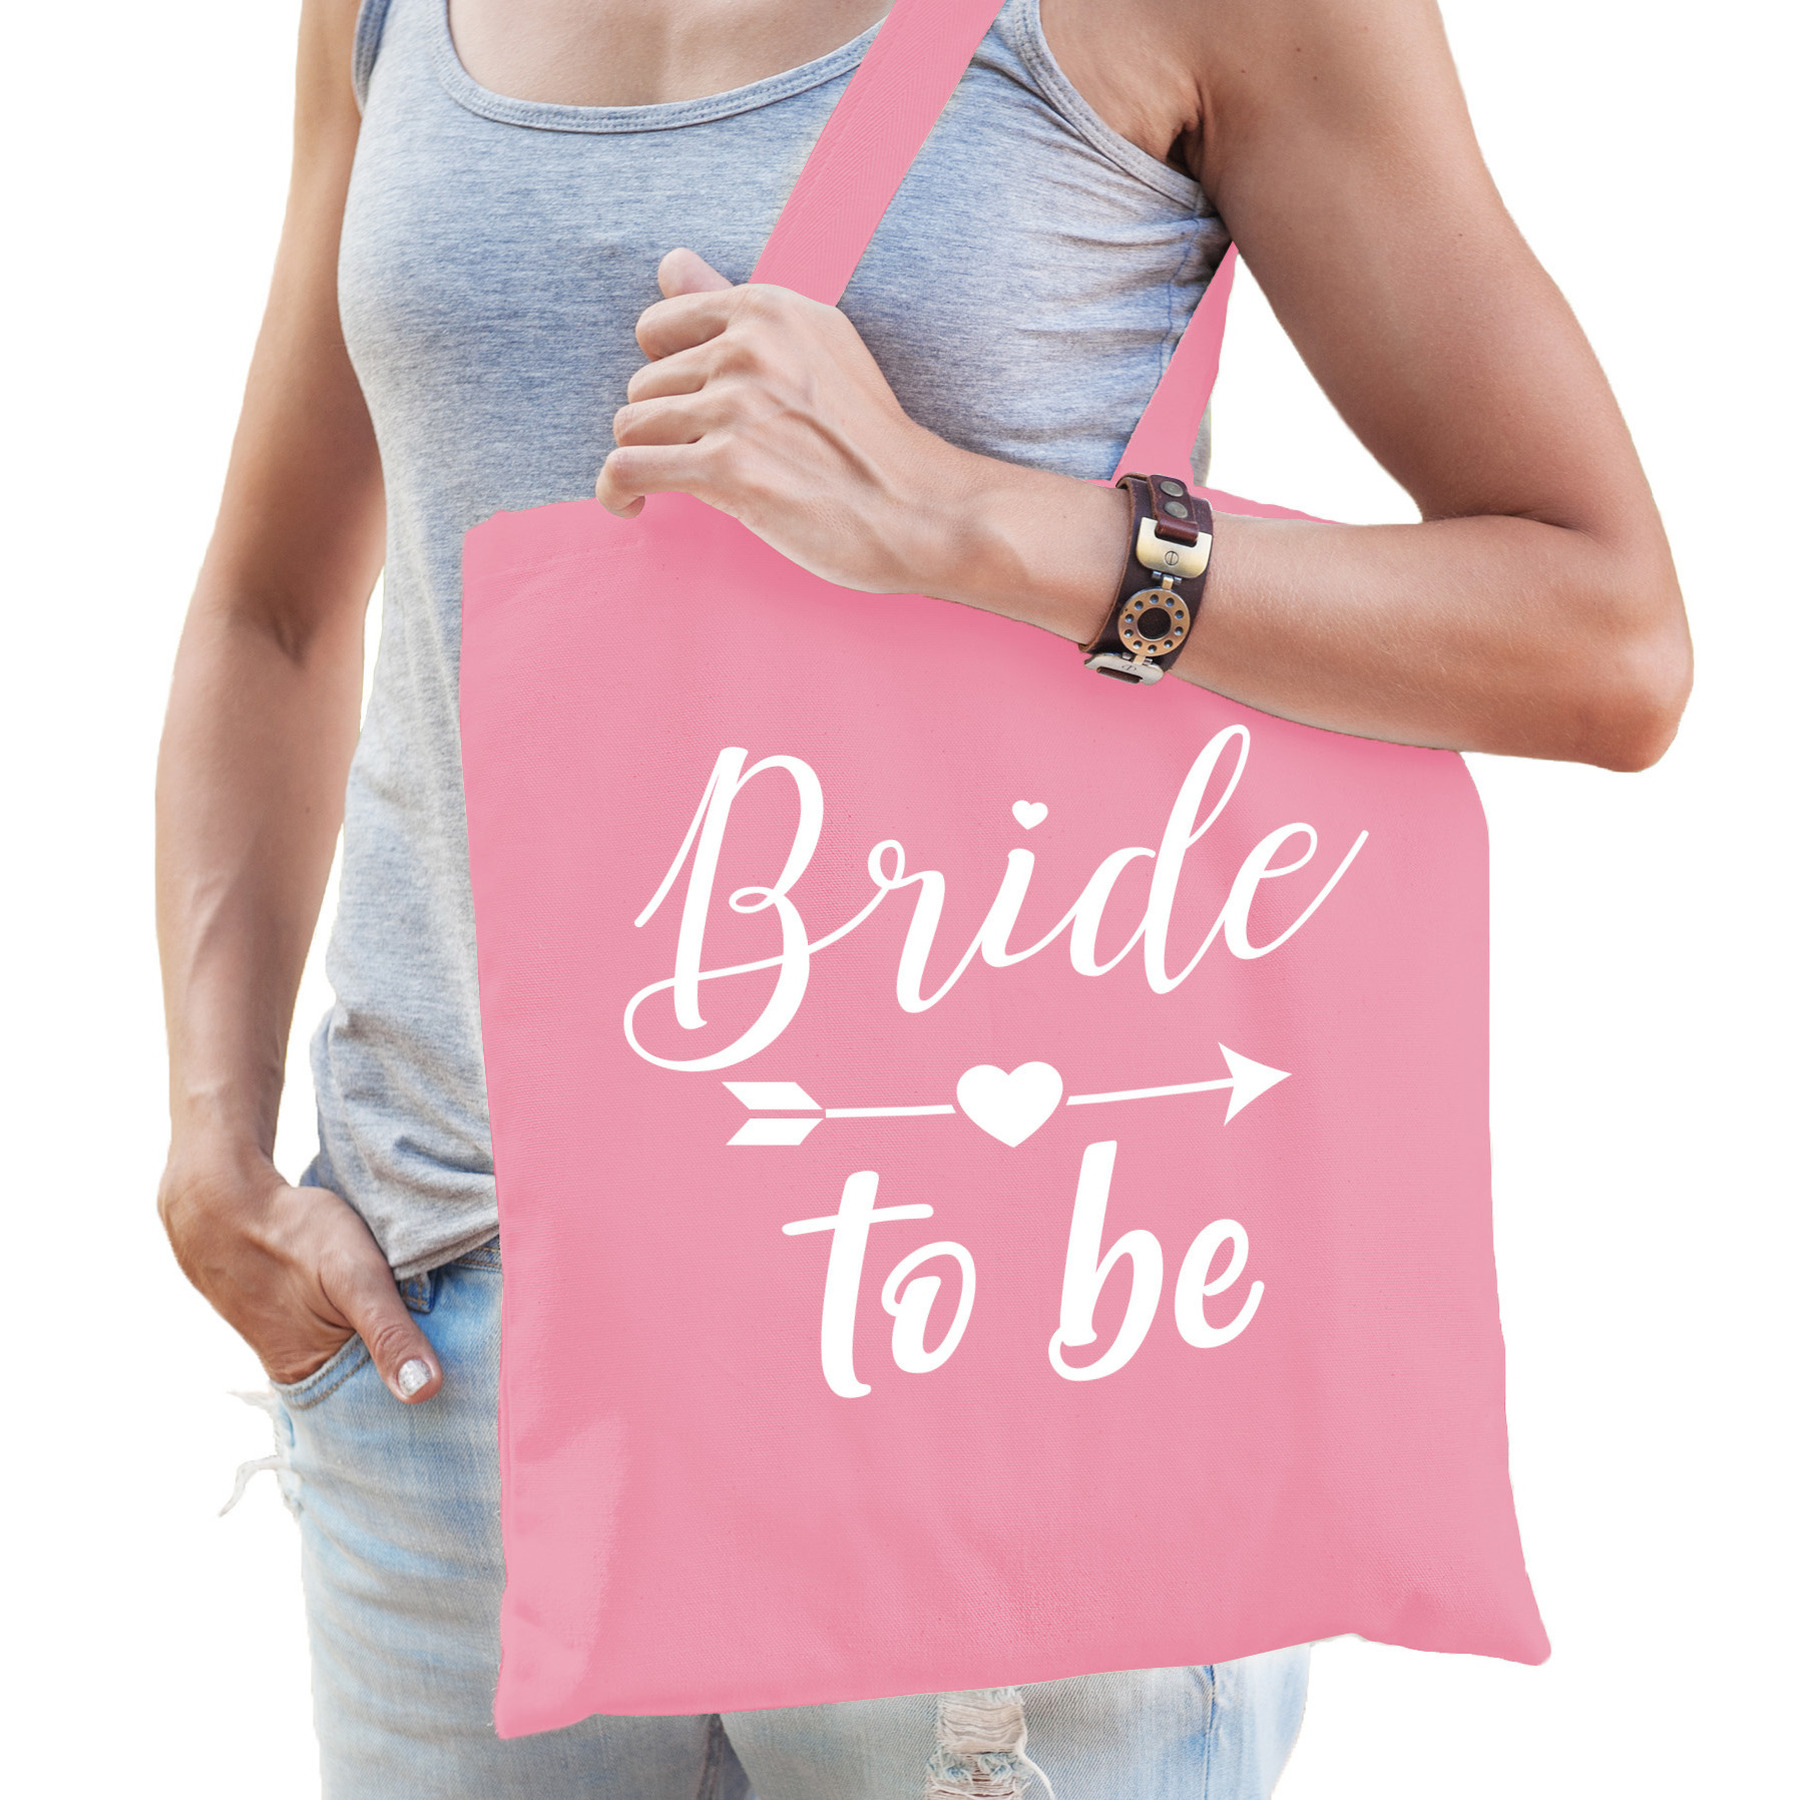 Bride to be tas bruiloft-vrijgezellenfeest roze katoen 42 x 38 cm